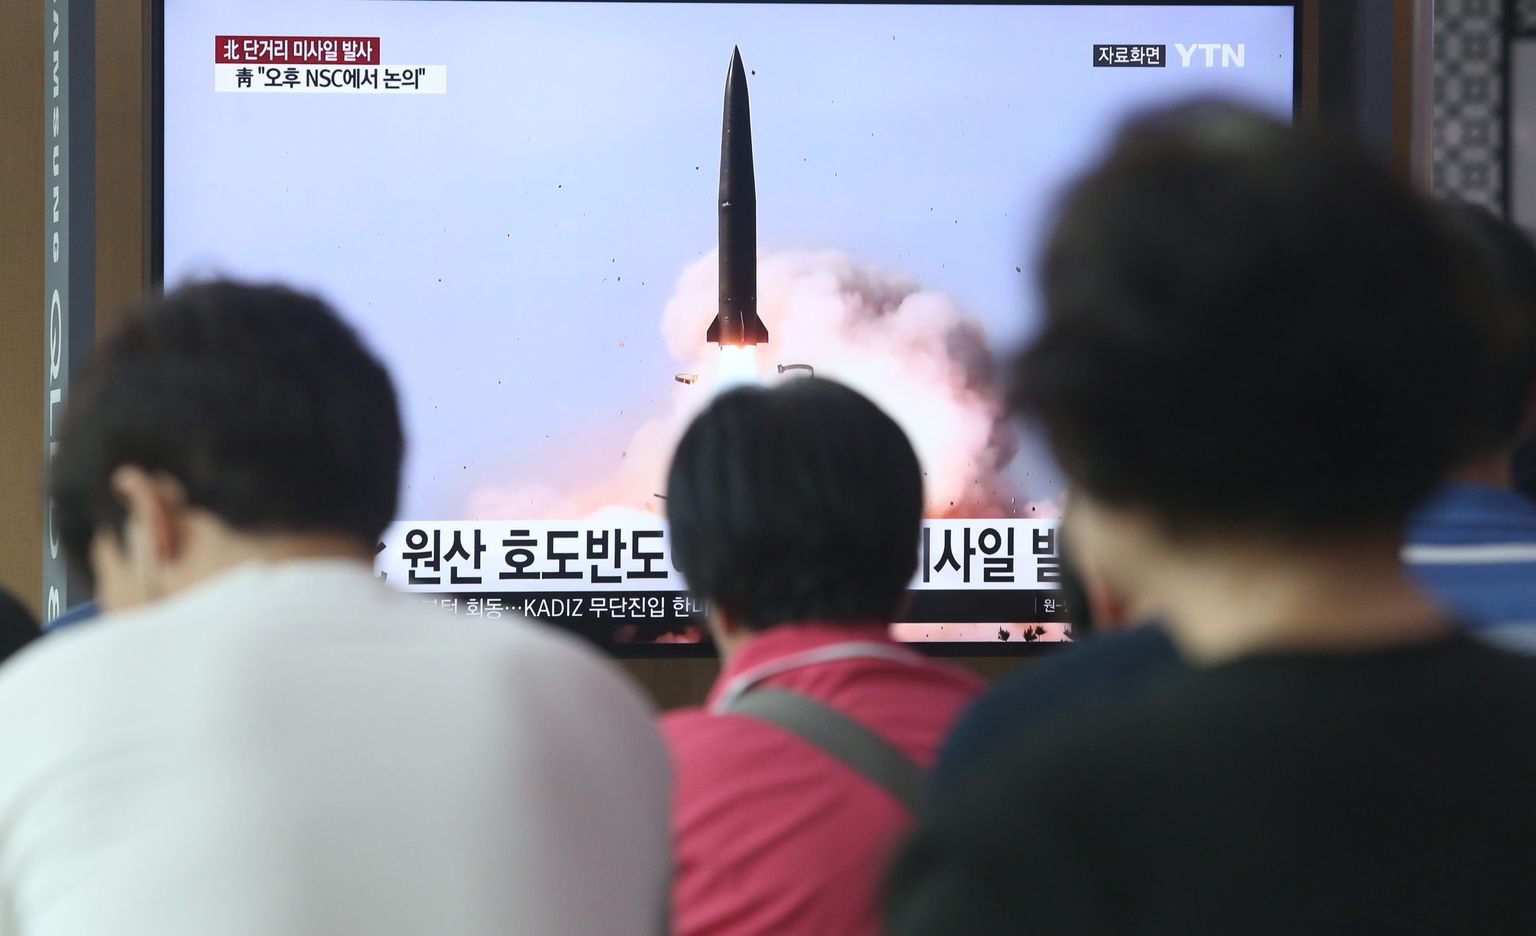 Inimesed Soulis vaatamas televiisorist uudist Põhja-Korea raketulistamisest.